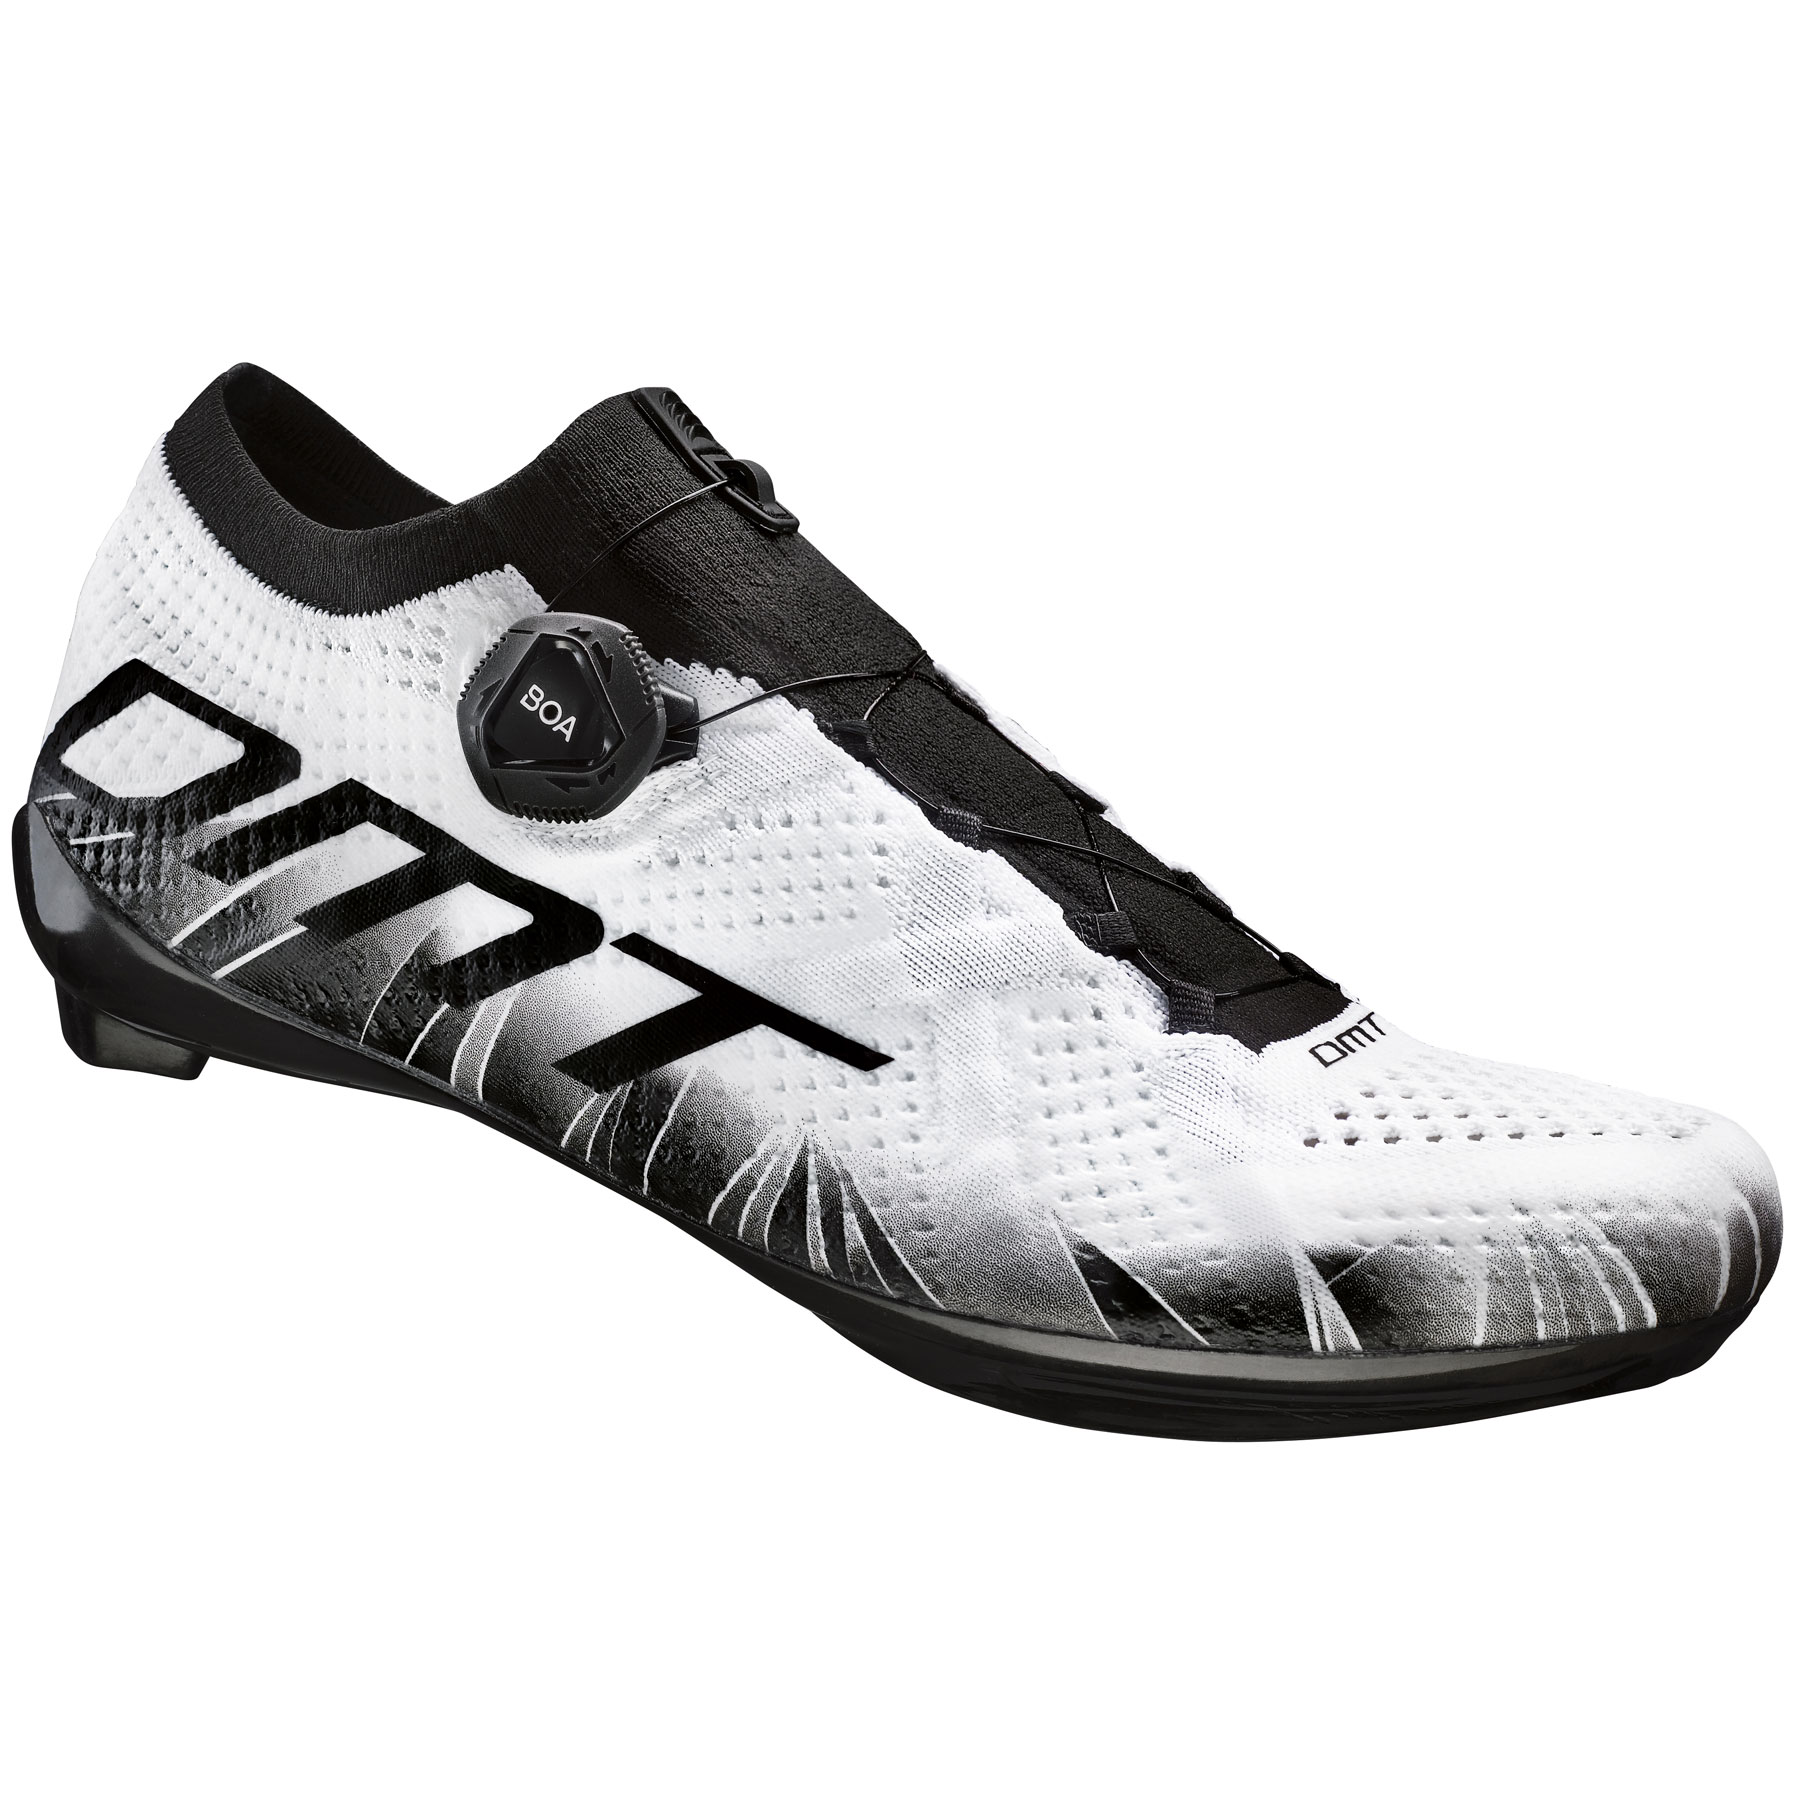 Produktbild von DMT KR1 Rennradschuh - weiß/schwarz